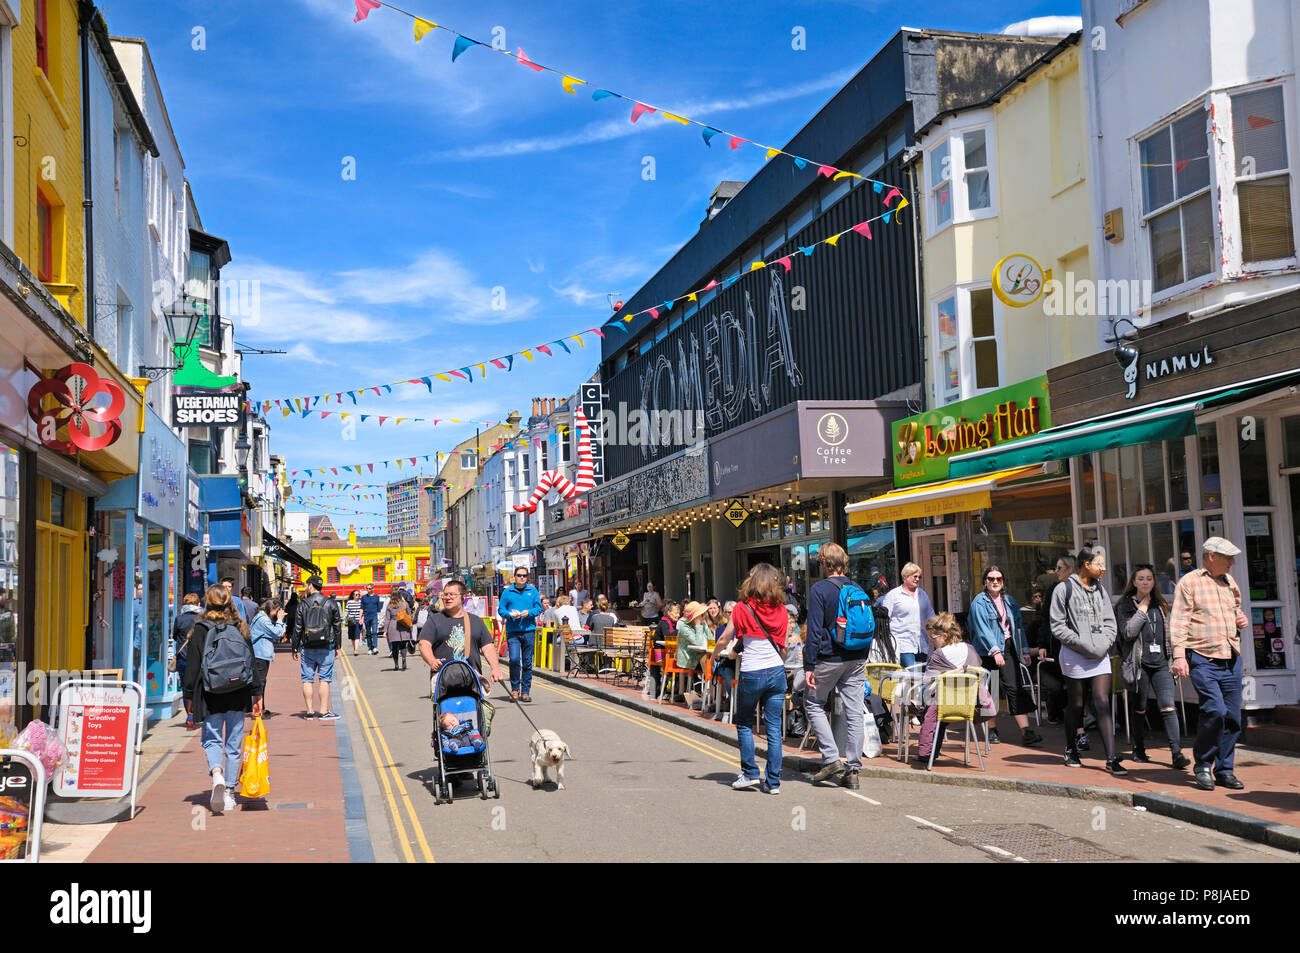 North Laine, Brighton, East Sussex, Reino Unido. Tiendas, restaurantes y Komedia - uno de los lugares de entretenimiento más populares de Brighton - en Gardner Street. Foto de stock